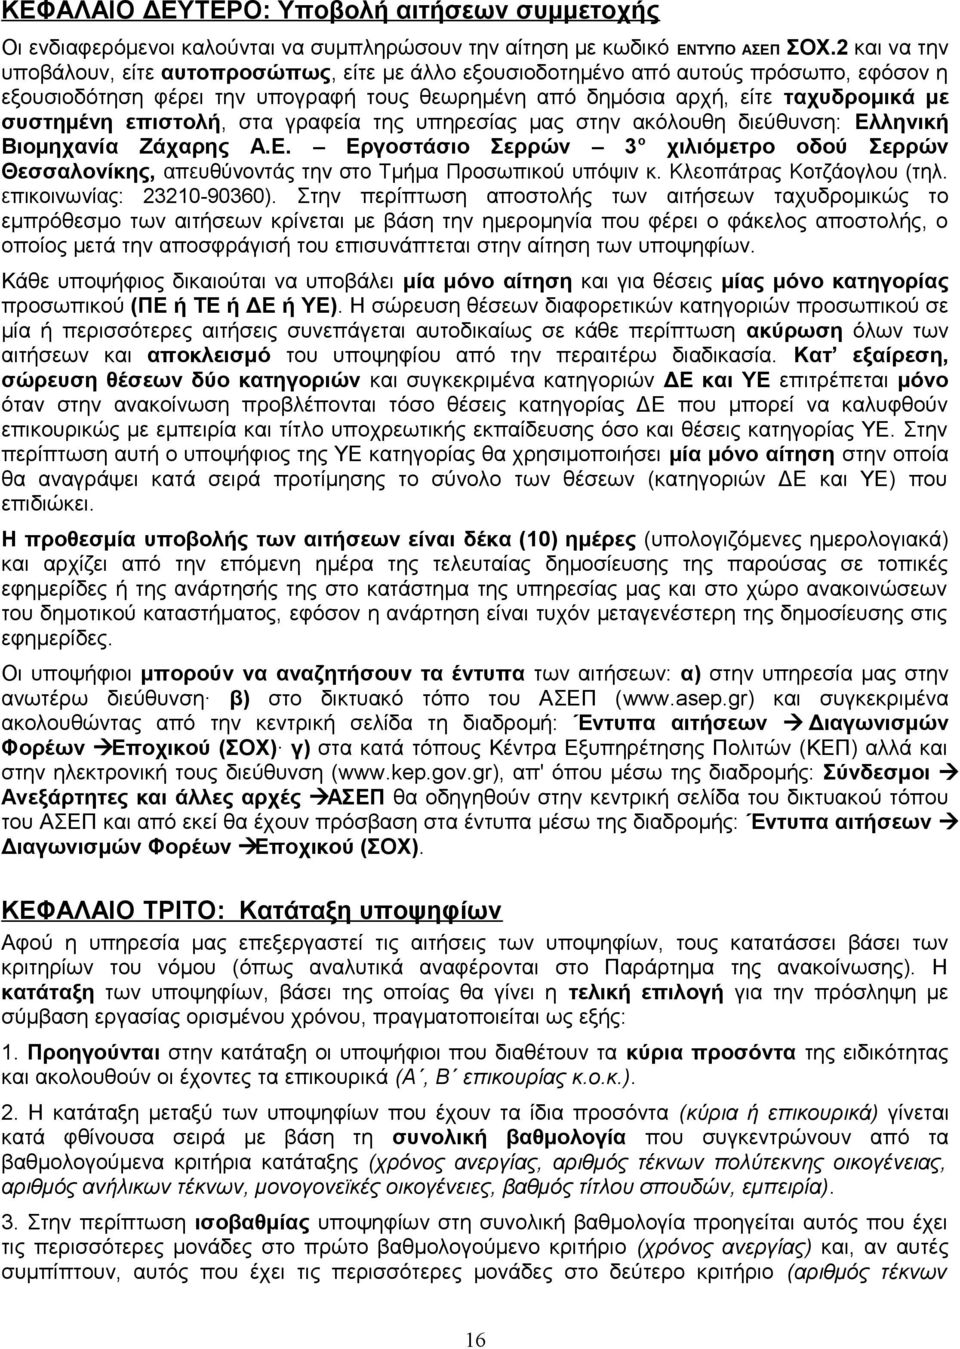 επιστολή, στα γραφεία της υπηρεσίας μας στην ακόλουθη διεύθυνση: Ελληνική Βιομηχανία Ζάχαρης Α.Ε. Εργοστάσιο Σερρών 3 ο χιλιόμετρο οδού Σερρών Θεσσαλονίκης, απευθύνοντάς την στο Τμήμα Προσωπικού υπόψιν κ.